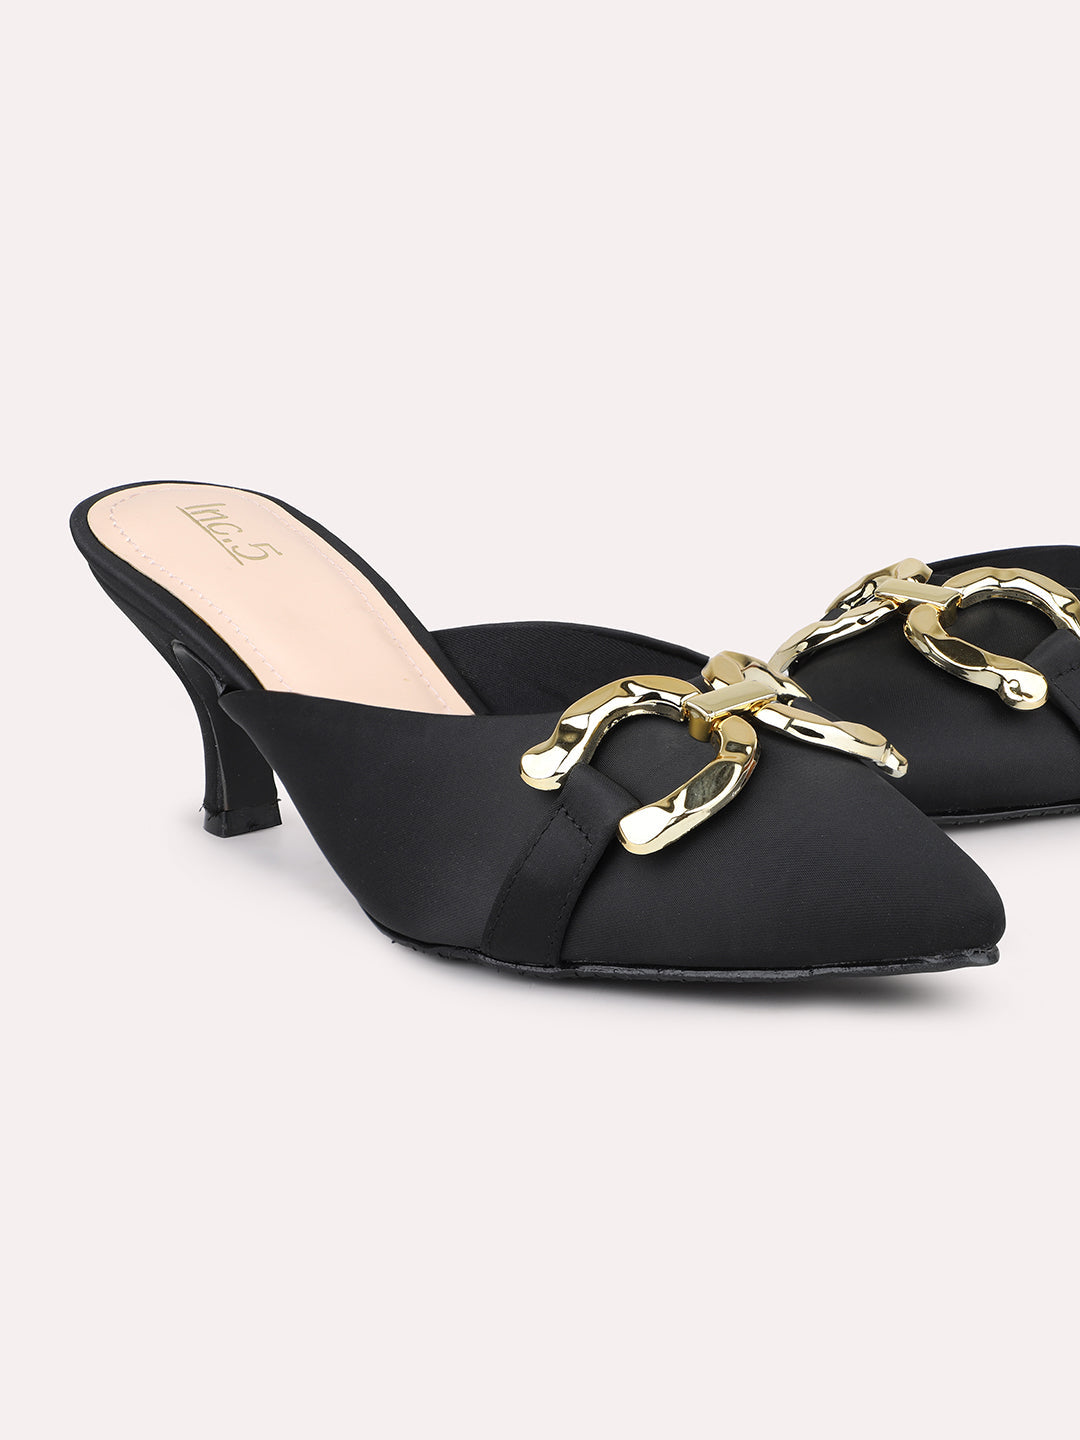 Women Black & Gold-Toned Buckle Embellished Kitten Heel Mules